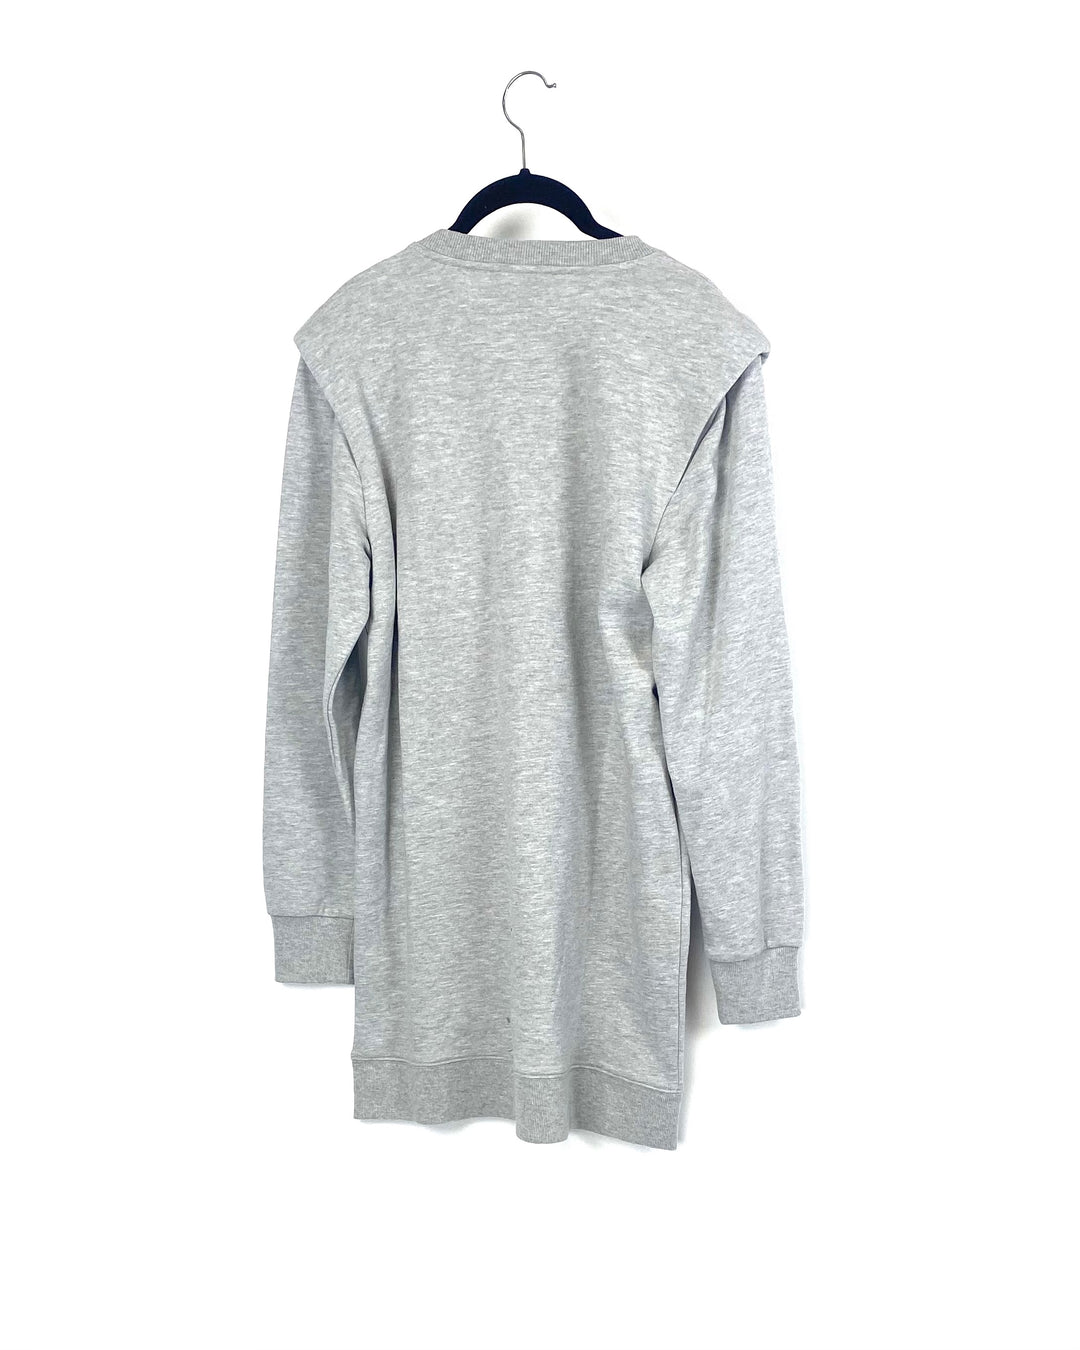 Gray Sweater Dress - Small